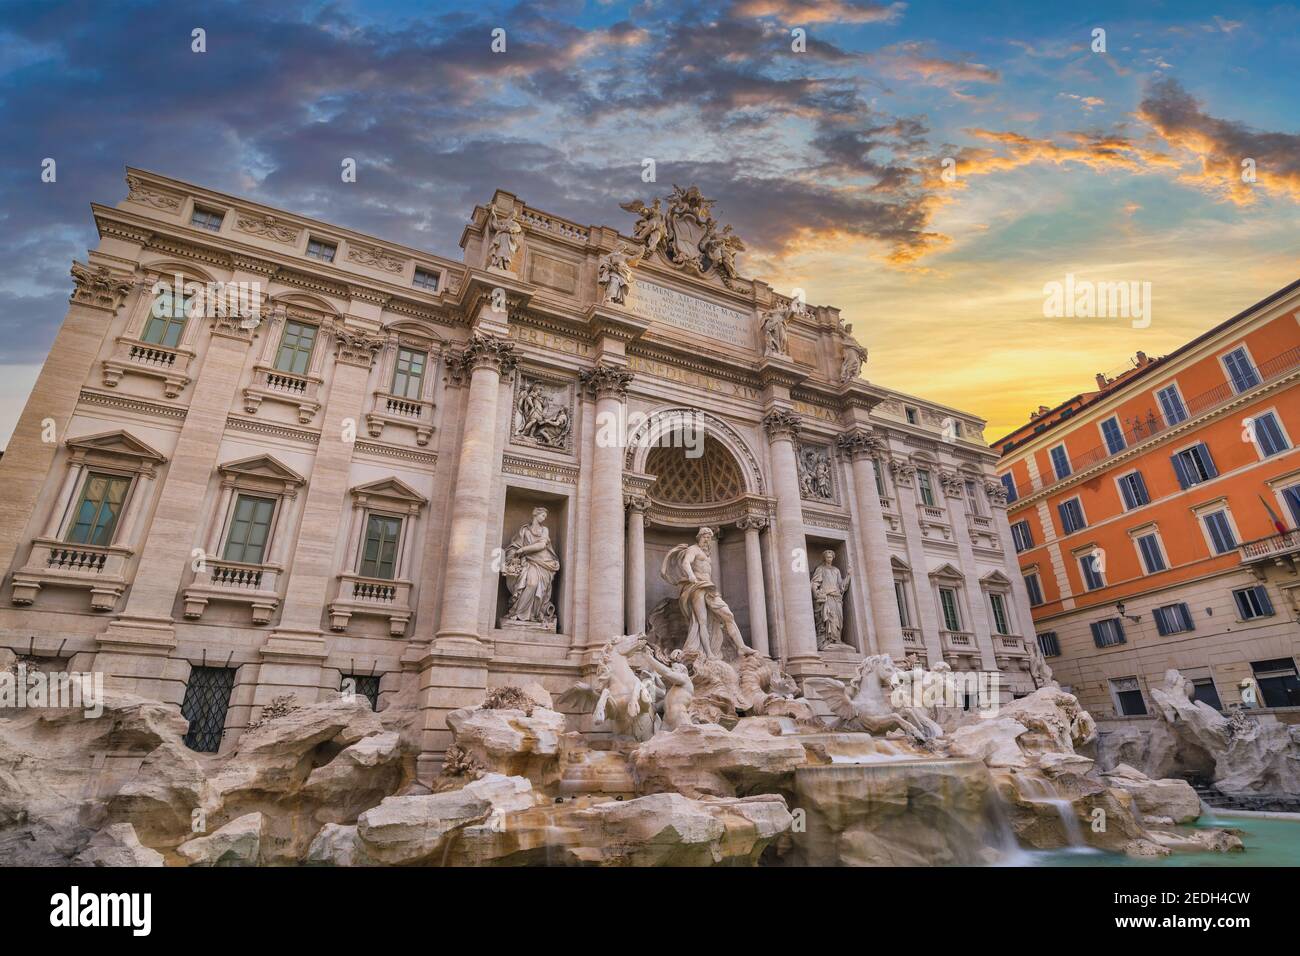 Rome Italy, sunrise city skyline at Trevi Fountain Stock Photo